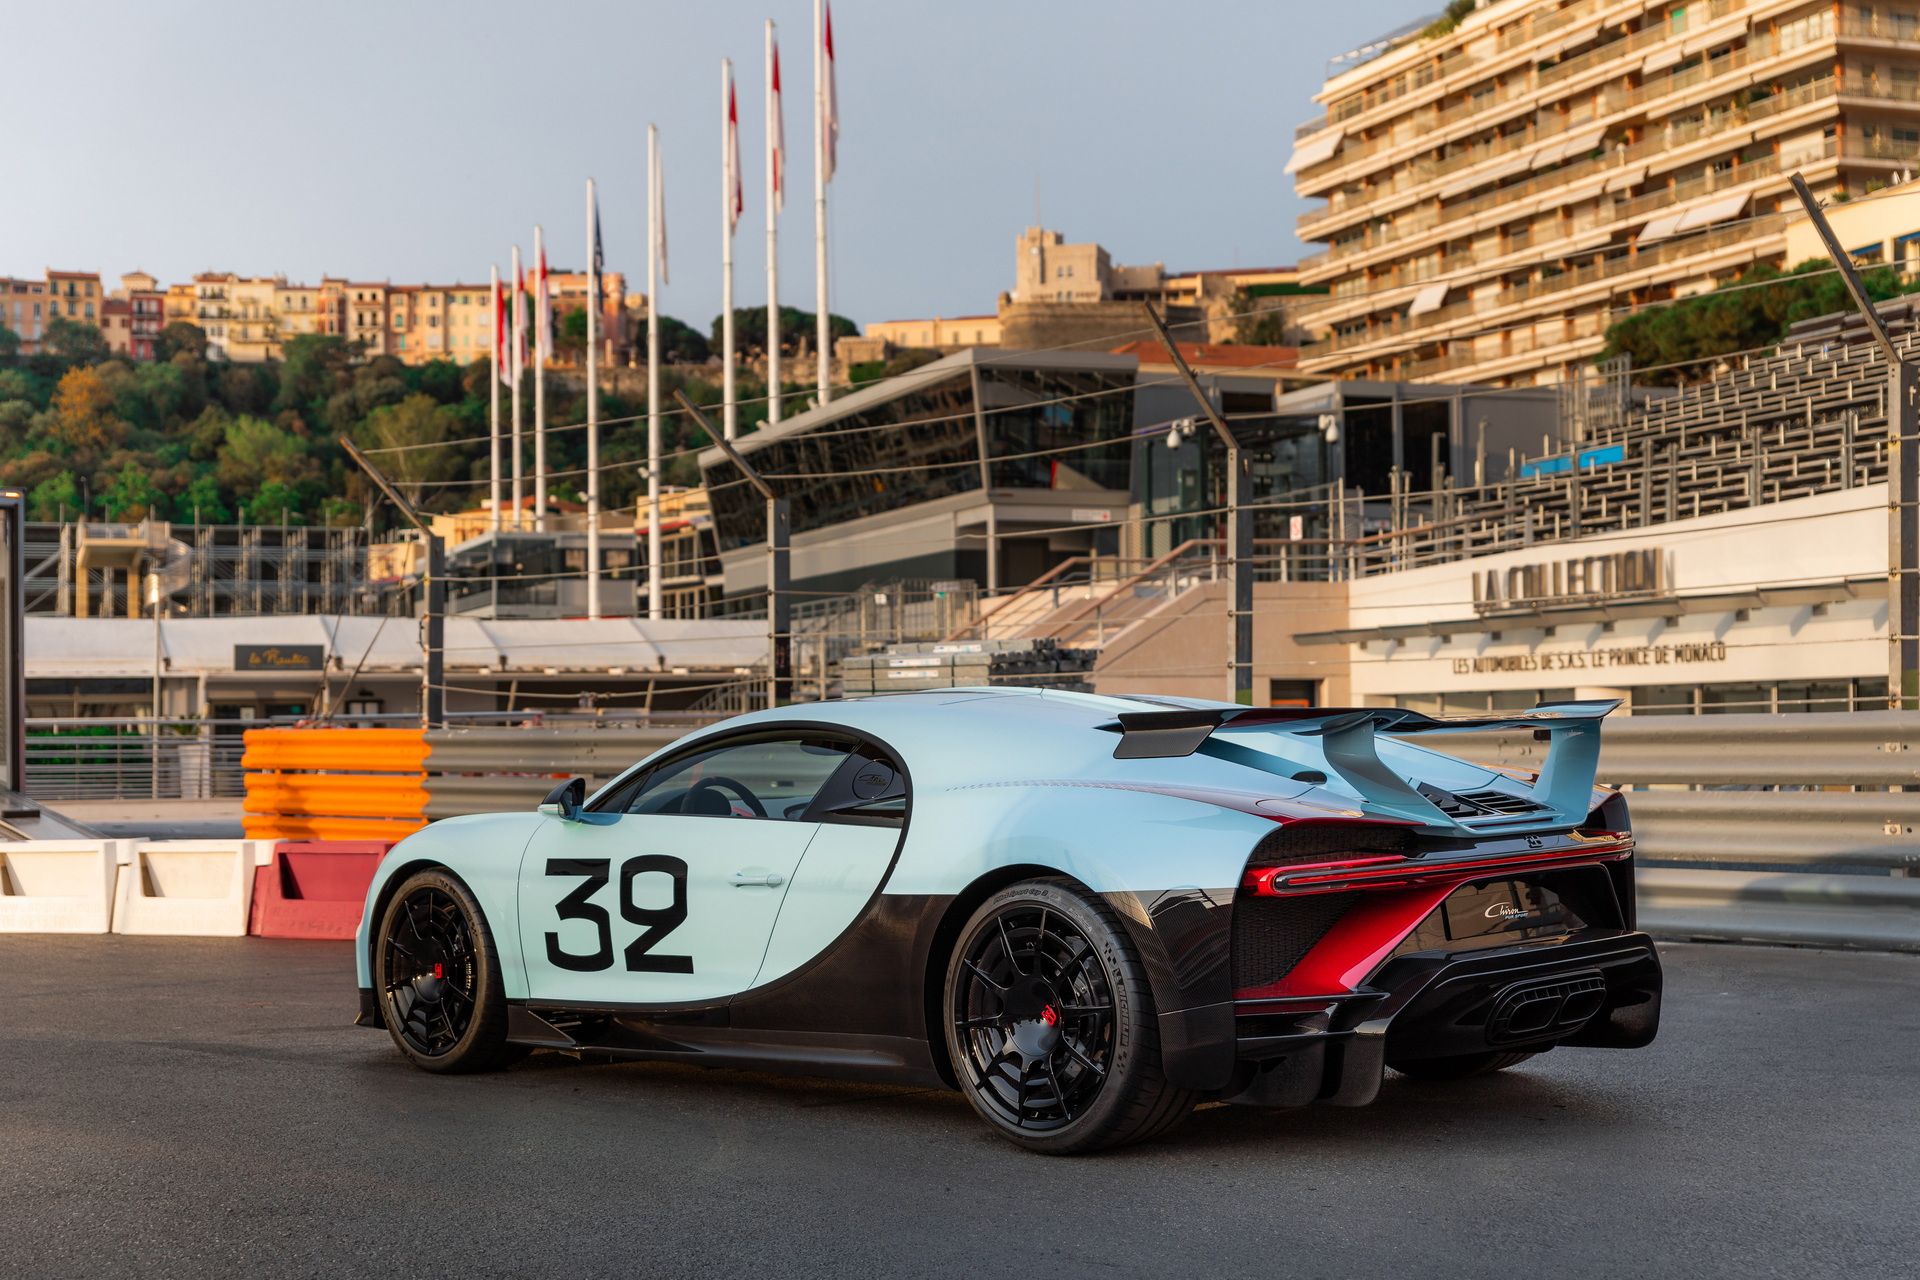 The Bugatti Chiron Pur Sport Grand Prix will be shown in Top Marques Monaco